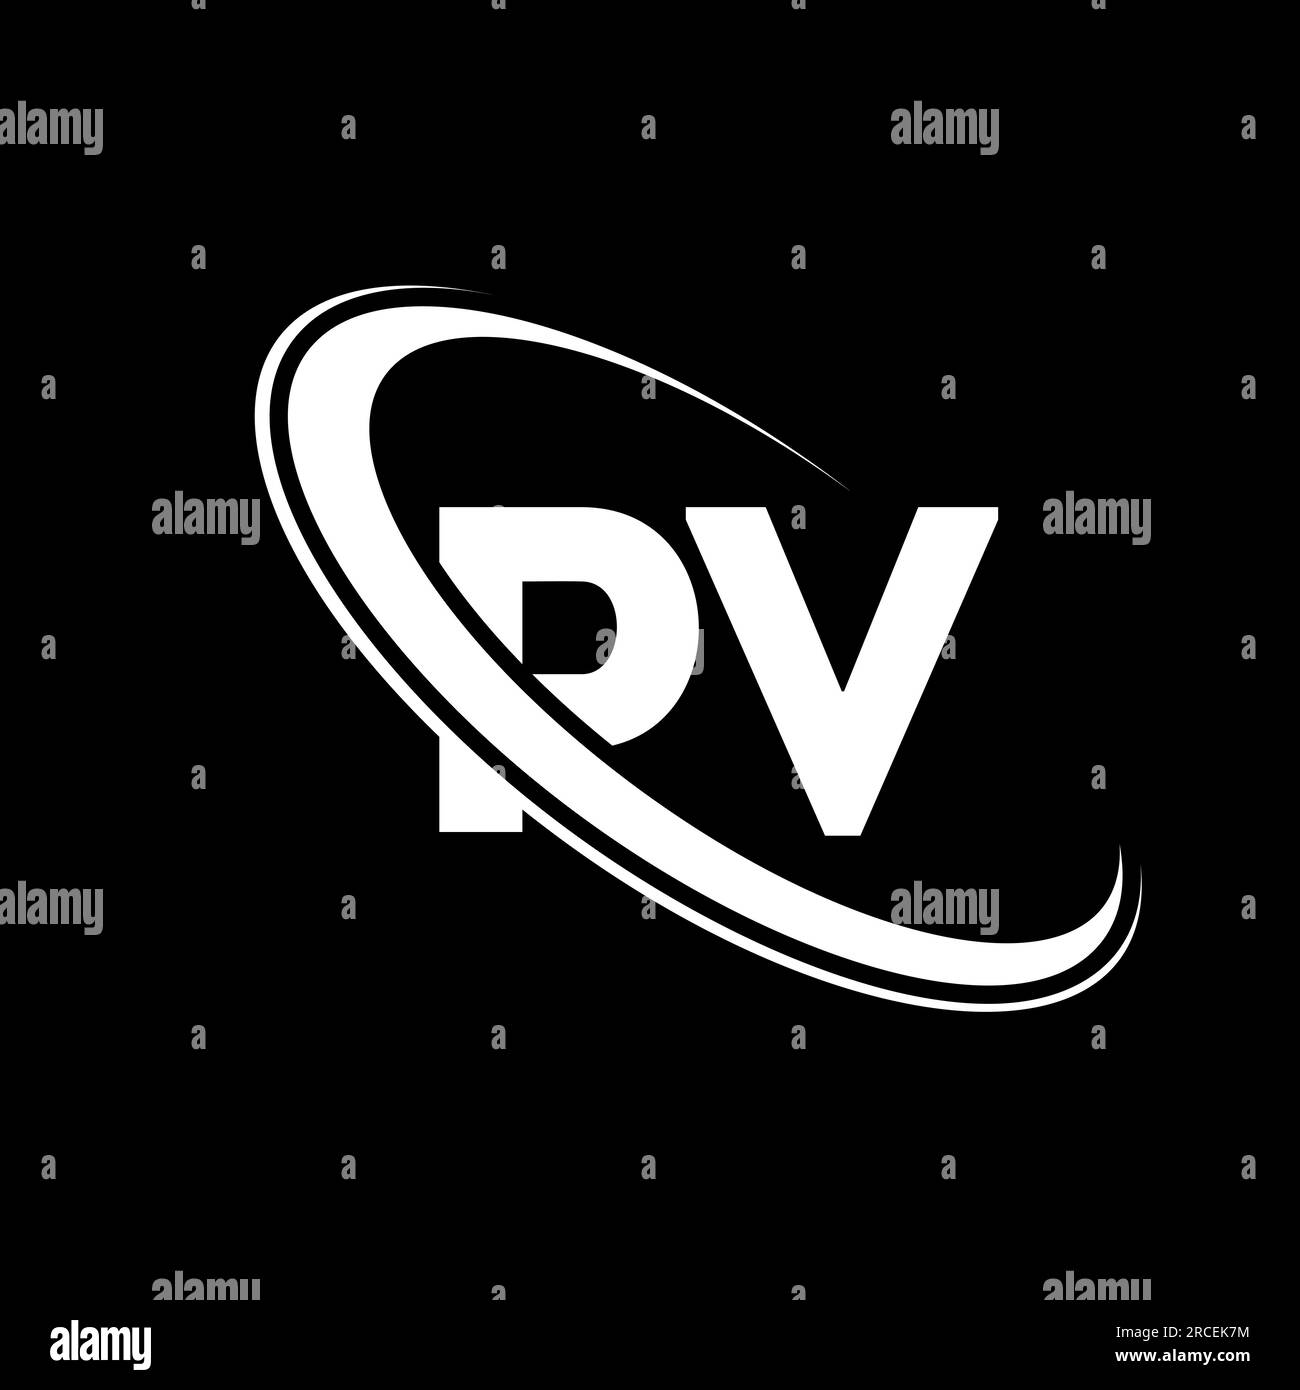 PV logo. P V design. White PV letter. PV/P V letter logo design. Initial letter PV linked circle uppercase monogram logo. Stock Vector